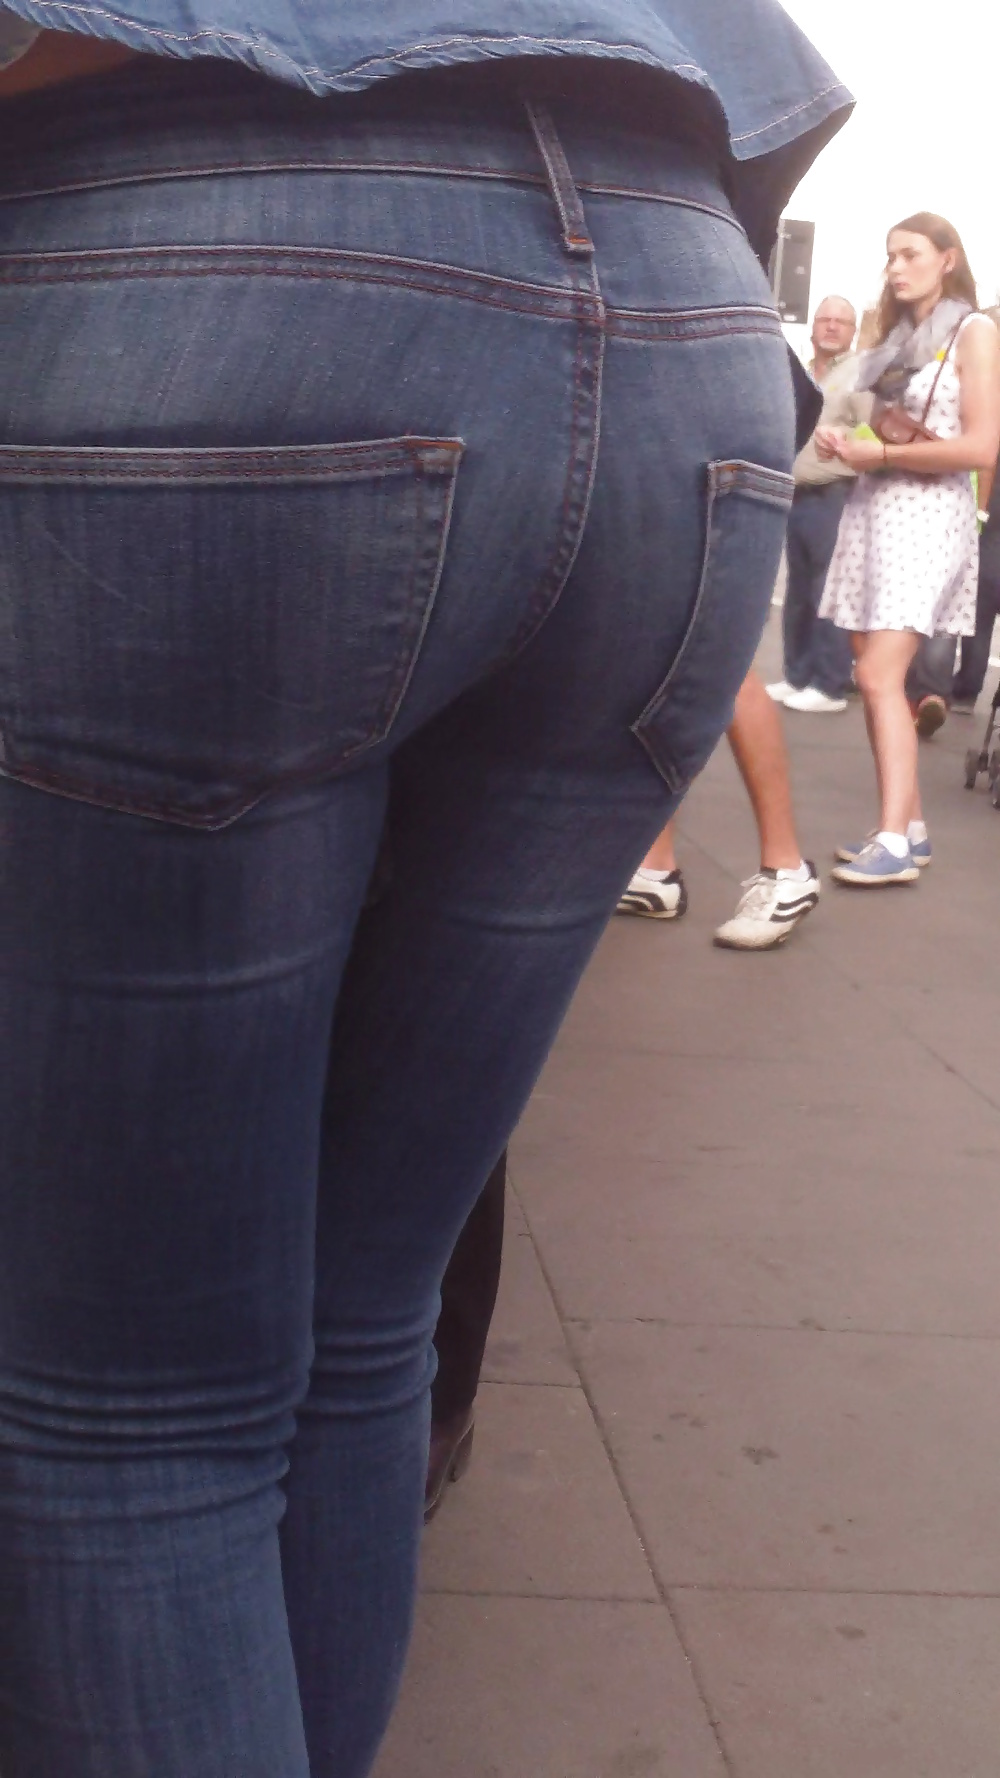 Popular teen girls ass & butt in jeans Part 6 #32010086